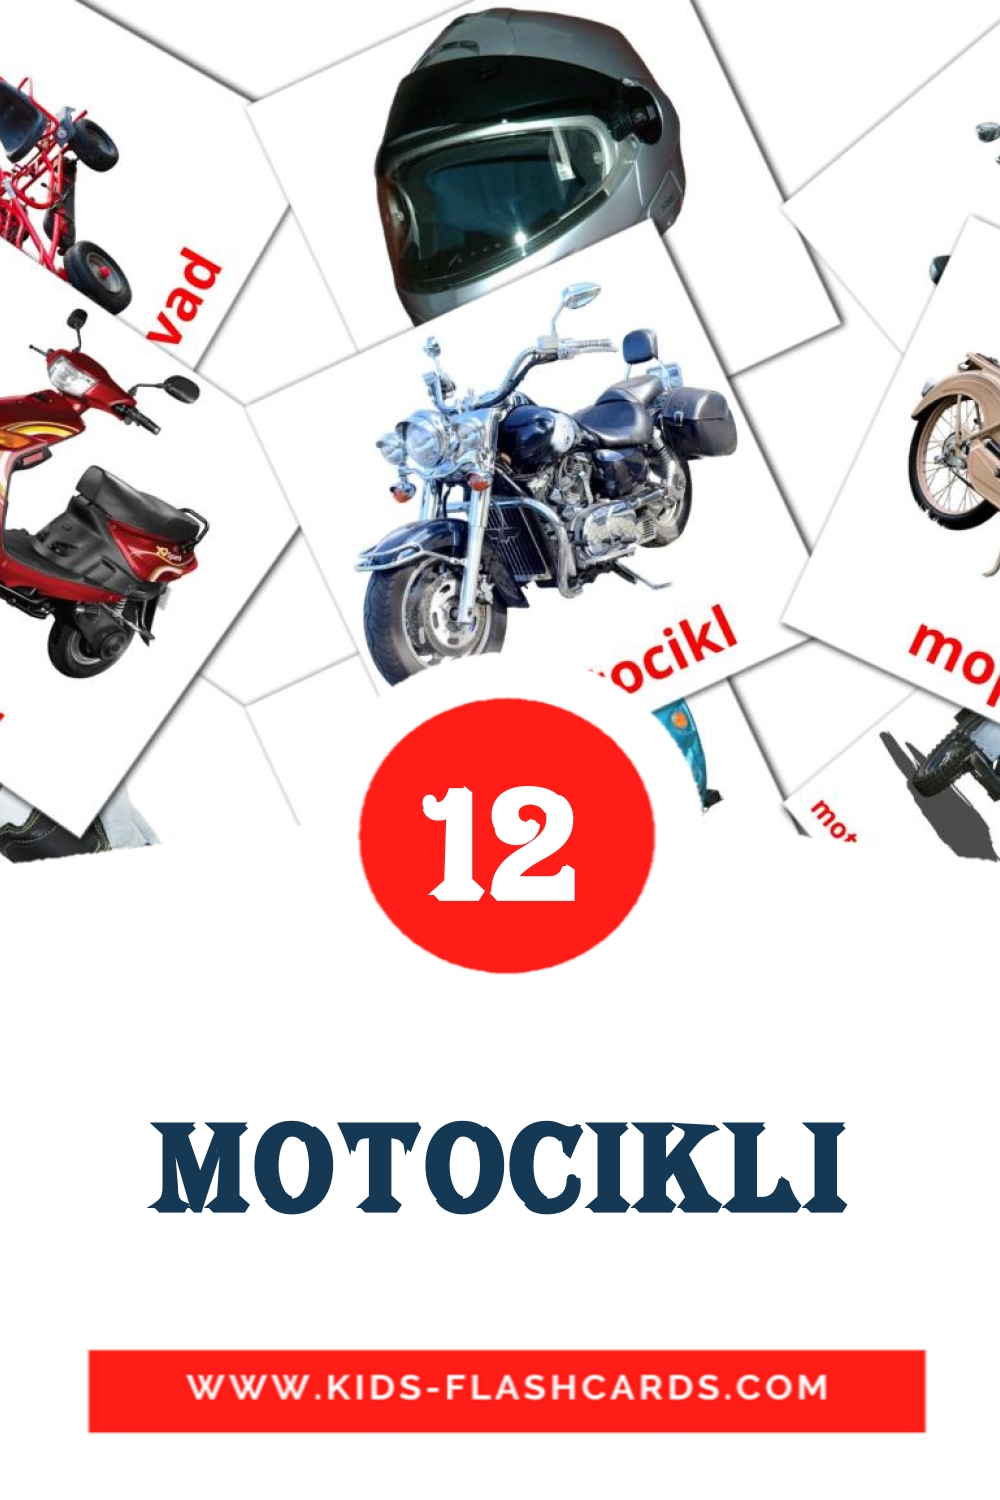 12 Motocikli fotokaarten voor kleuters in het servisch